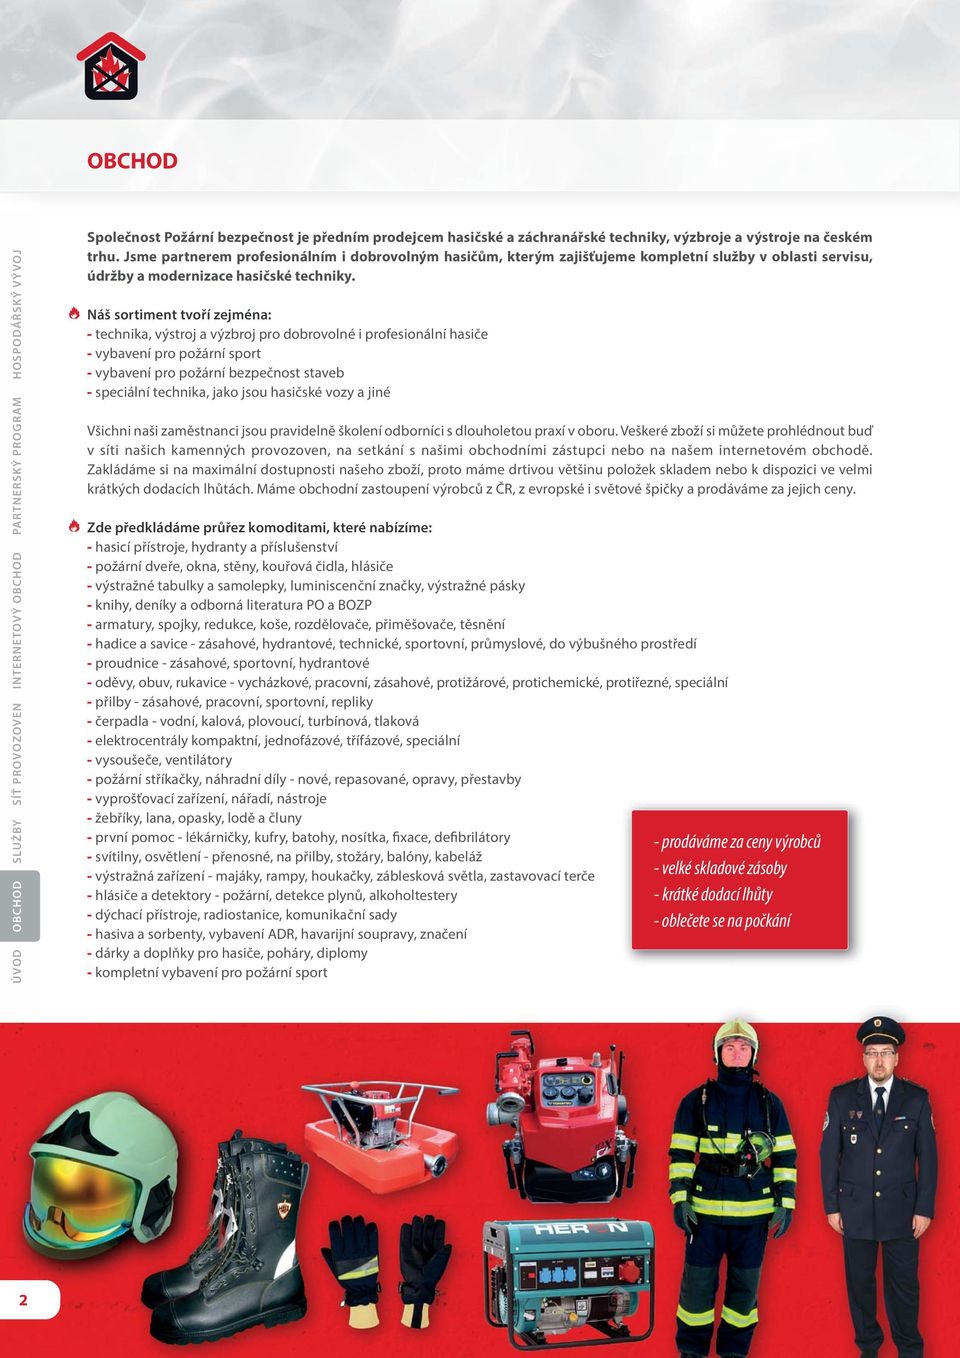 Náš sortiment tvoří zejména: - technika, výstroj a výzbroj pro dobrovolné i profesionální hasiče - vybavení pro požární sport - vybavení pro požární bezpečnost staveb - speciální technika, jako jsou